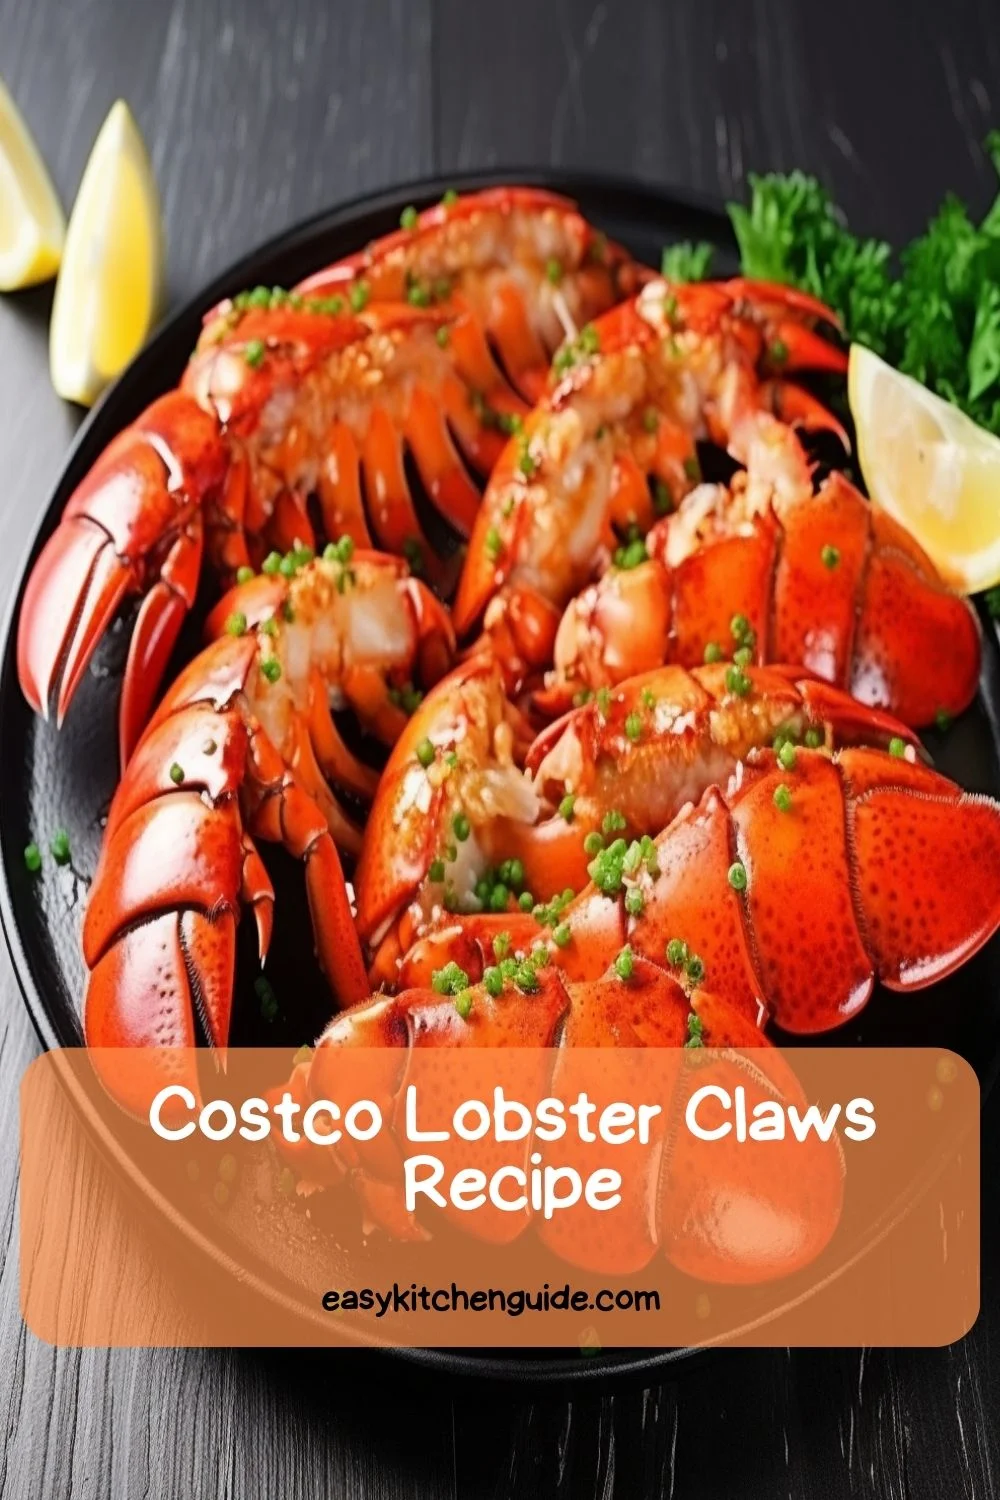 Costco Lobster Claws Recipe